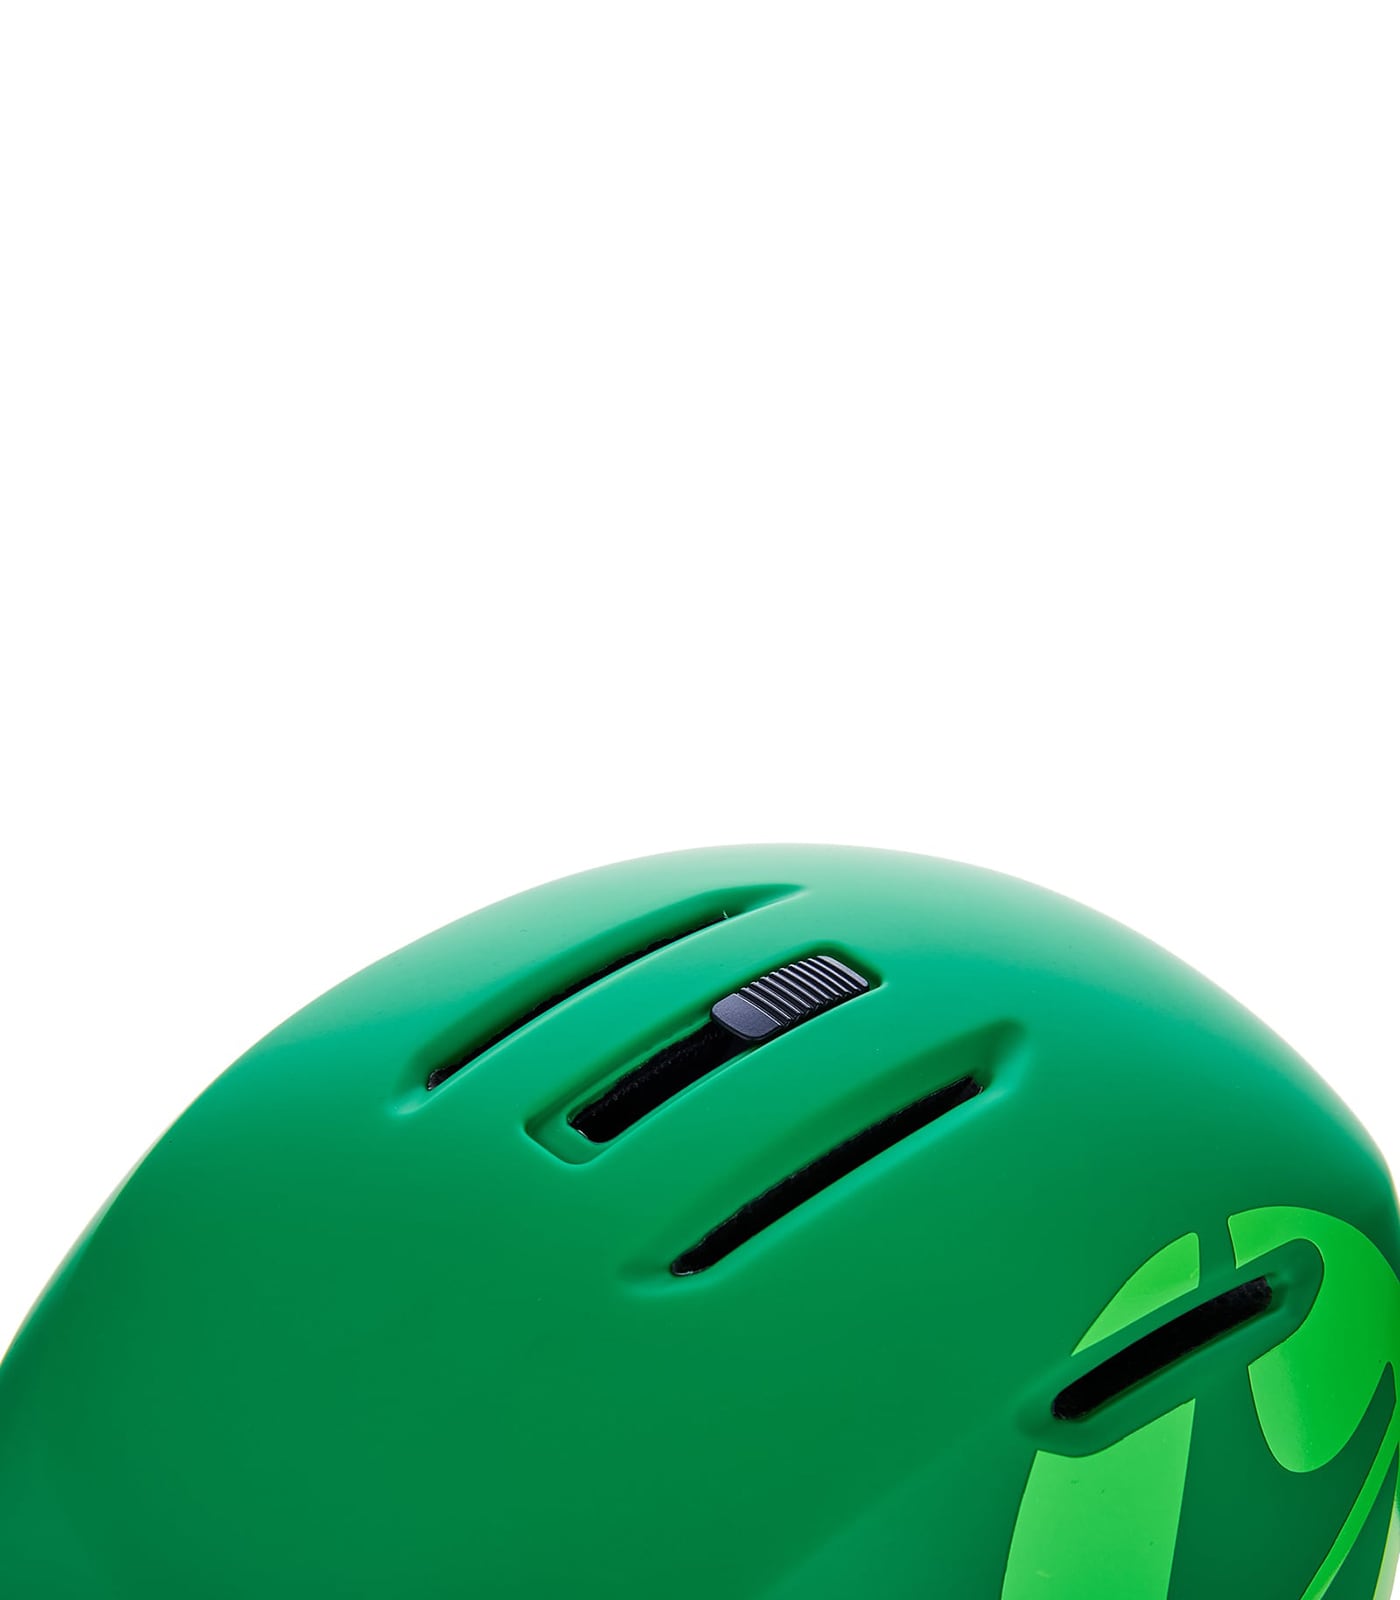 Viper ski helmet, dark green matt/bright green matt